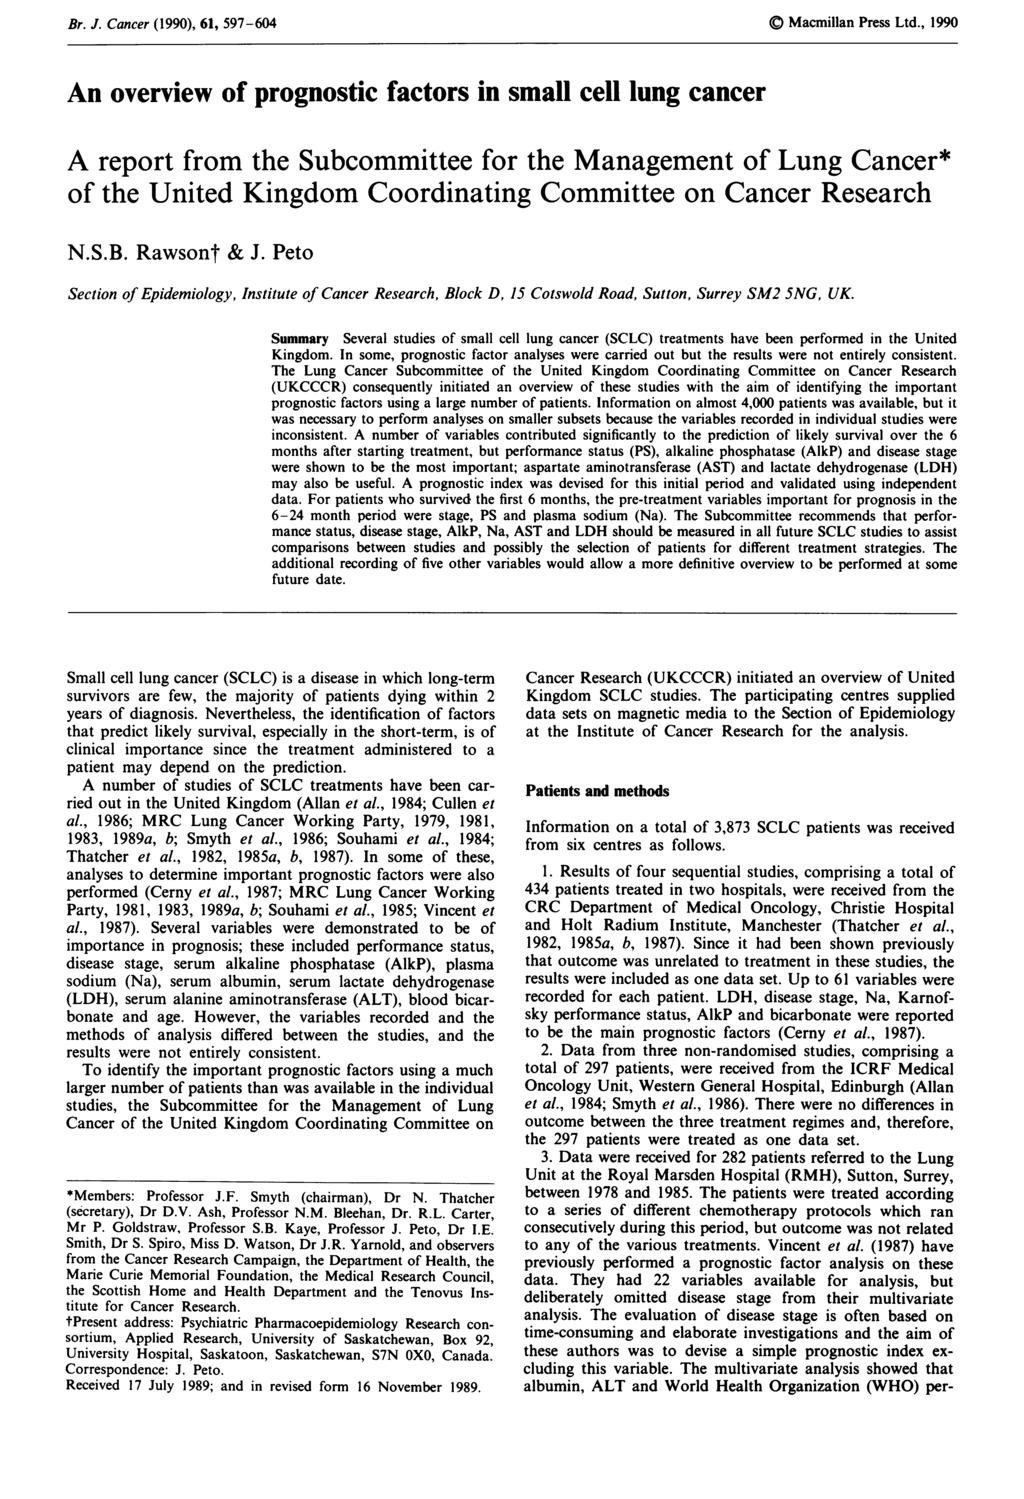 '." Br. J. Cancer Cancer (1990), (1990), 61, 597-604 Macmillan Press Ltd., 1990 61, 597-604 Macmillan Press Ltd.